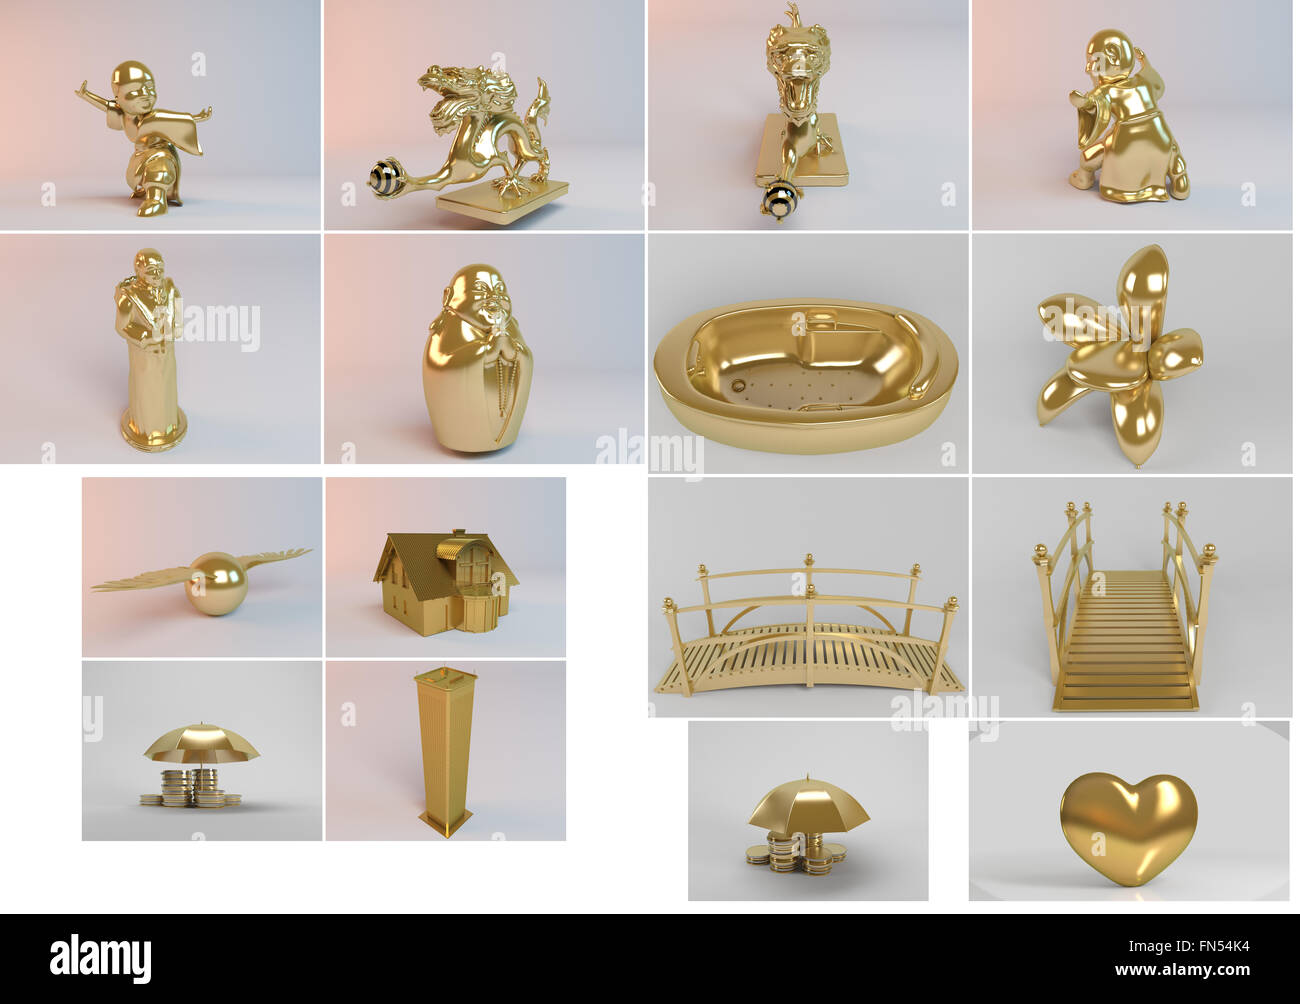 Grande 3d collezione di oggetti d'oro con rendering di alta qualità e dettagli che possono anche essere facilmente isolato. Foto Stock